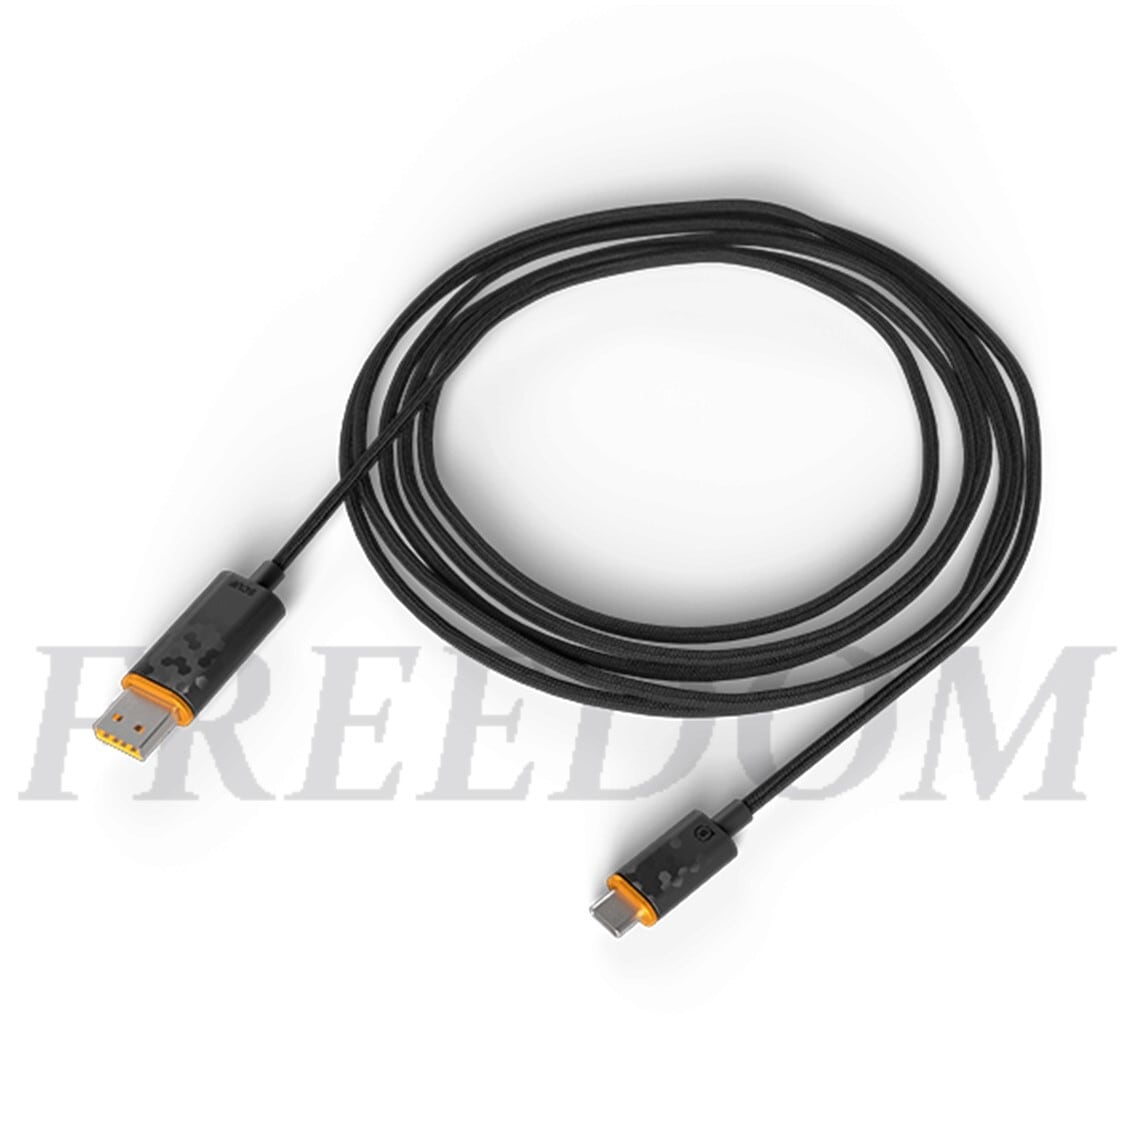 USB-C ケーブル FOR XBOX SERIES X|S & PS5 | SCUF販売 FREEDOM